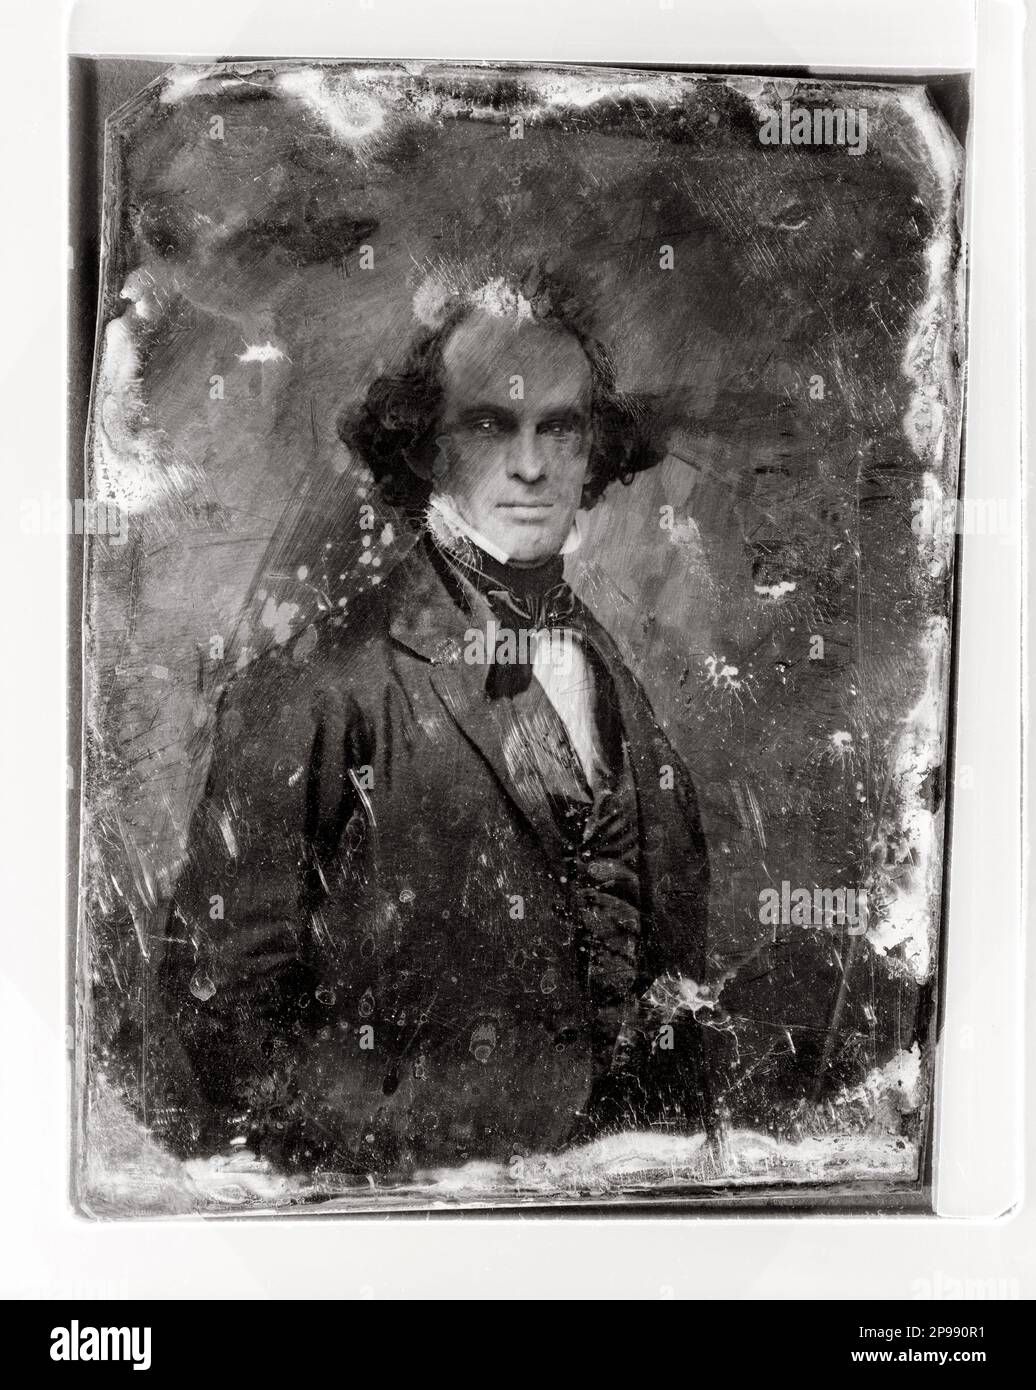 Lo scrittore americano Nathaniel HAWTHORNE ( 1804 - 1864 ) , autore della LETTERA SCARLATTA ( la letera scarlatta - 1850 ) . Daguerropype ritratto da anonimo fotografo , 1850 ca - - SCRITTORE - LETTERATURA - LETTERATURA - LETTERATO - romanziere - novelliere - baffi - baffi - colletto - colletto - cravatta - fiocco - papillon - cravatta - LETTERATO - SCRITTORE - LETTERATURA - LETTERATURA - RITRATTO - RITRATTO - DAGHERROTIPO ----- Archivio BB Foto Stock